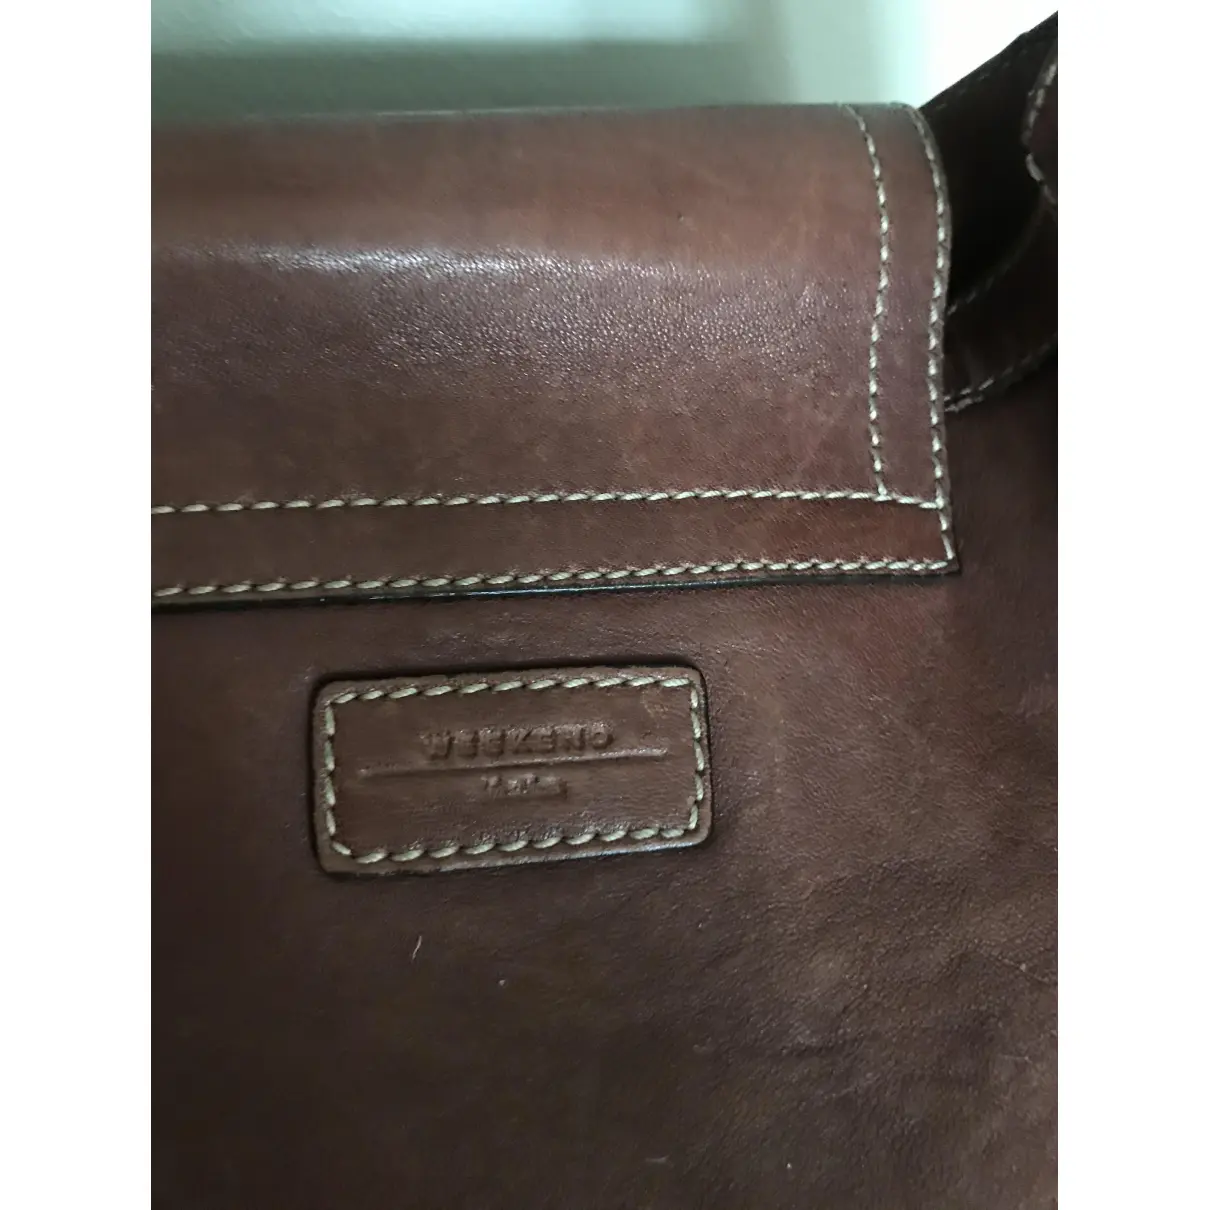 Leather handbag Max Mara Weekend